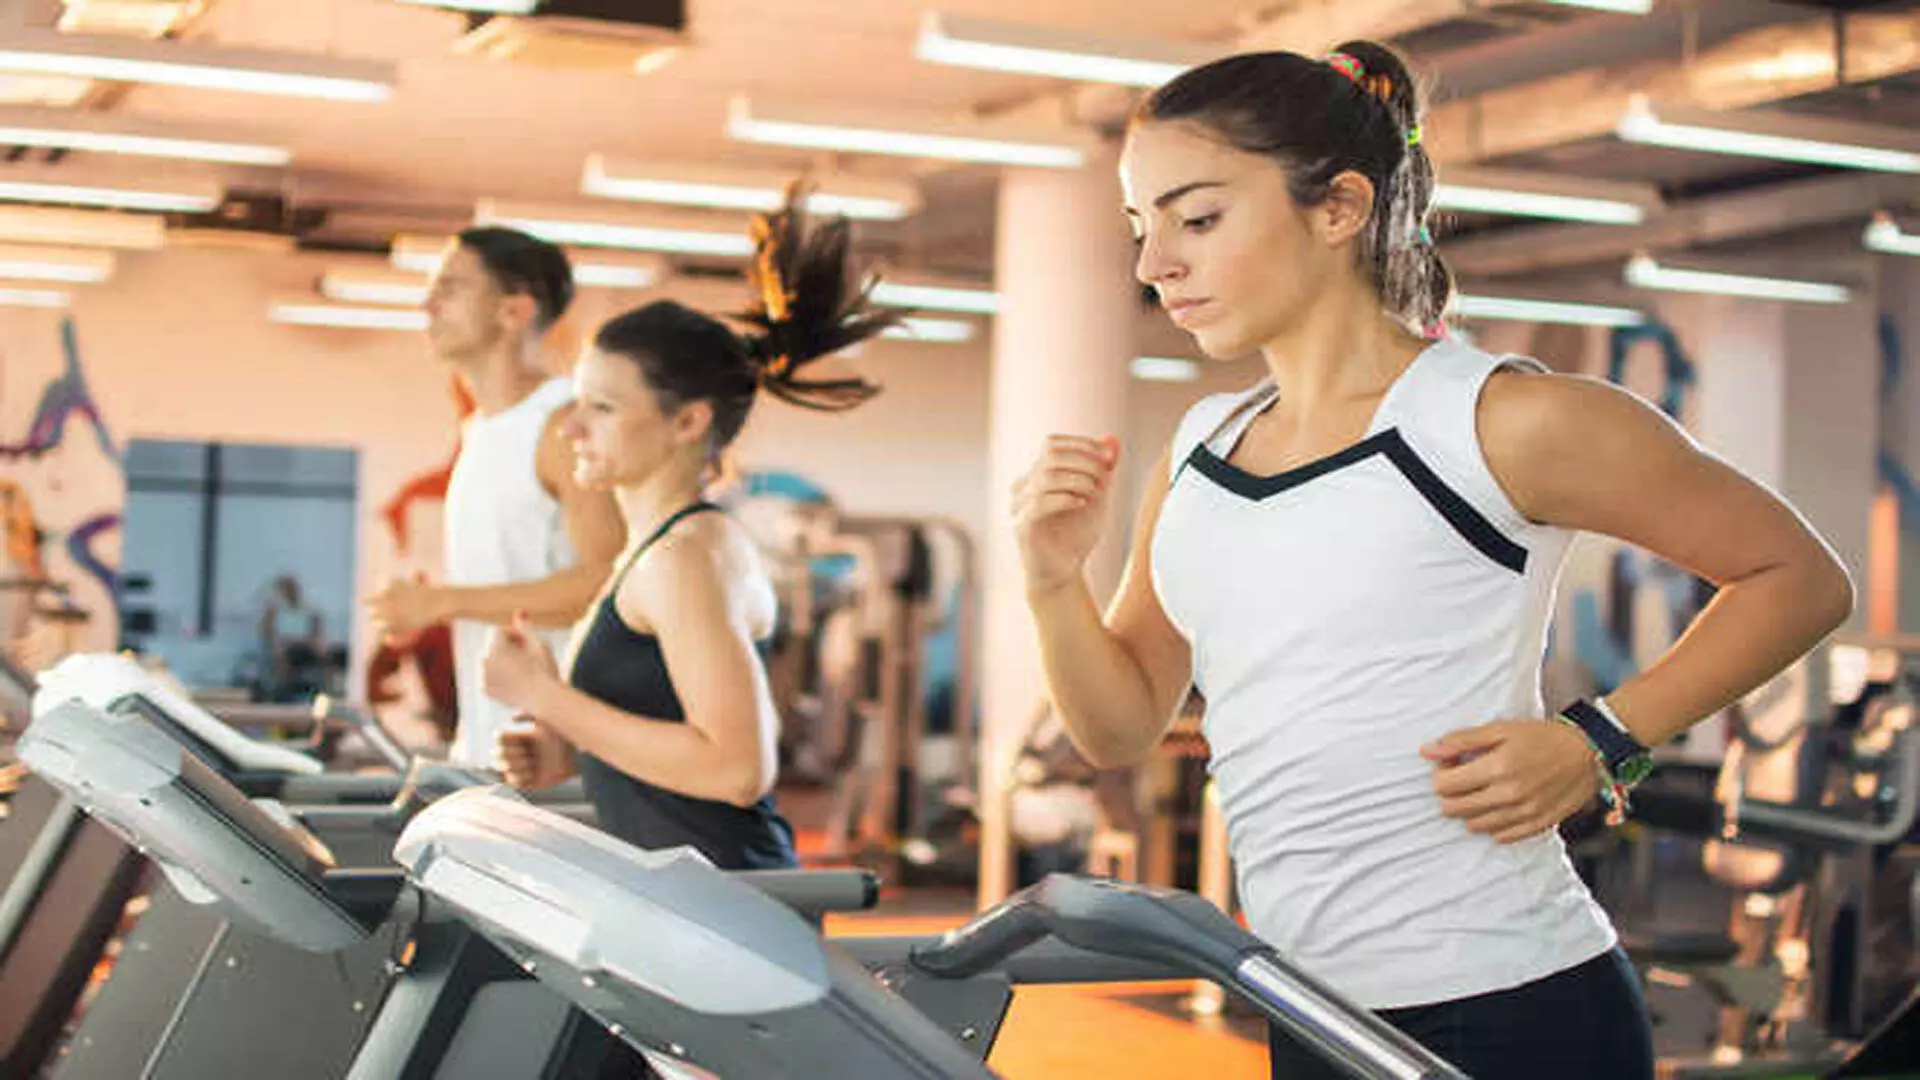 वैज्ञानिकों ने पता लगाया कि व्यायाम कैसे रोक सकता है उम्र बढ़ने से?